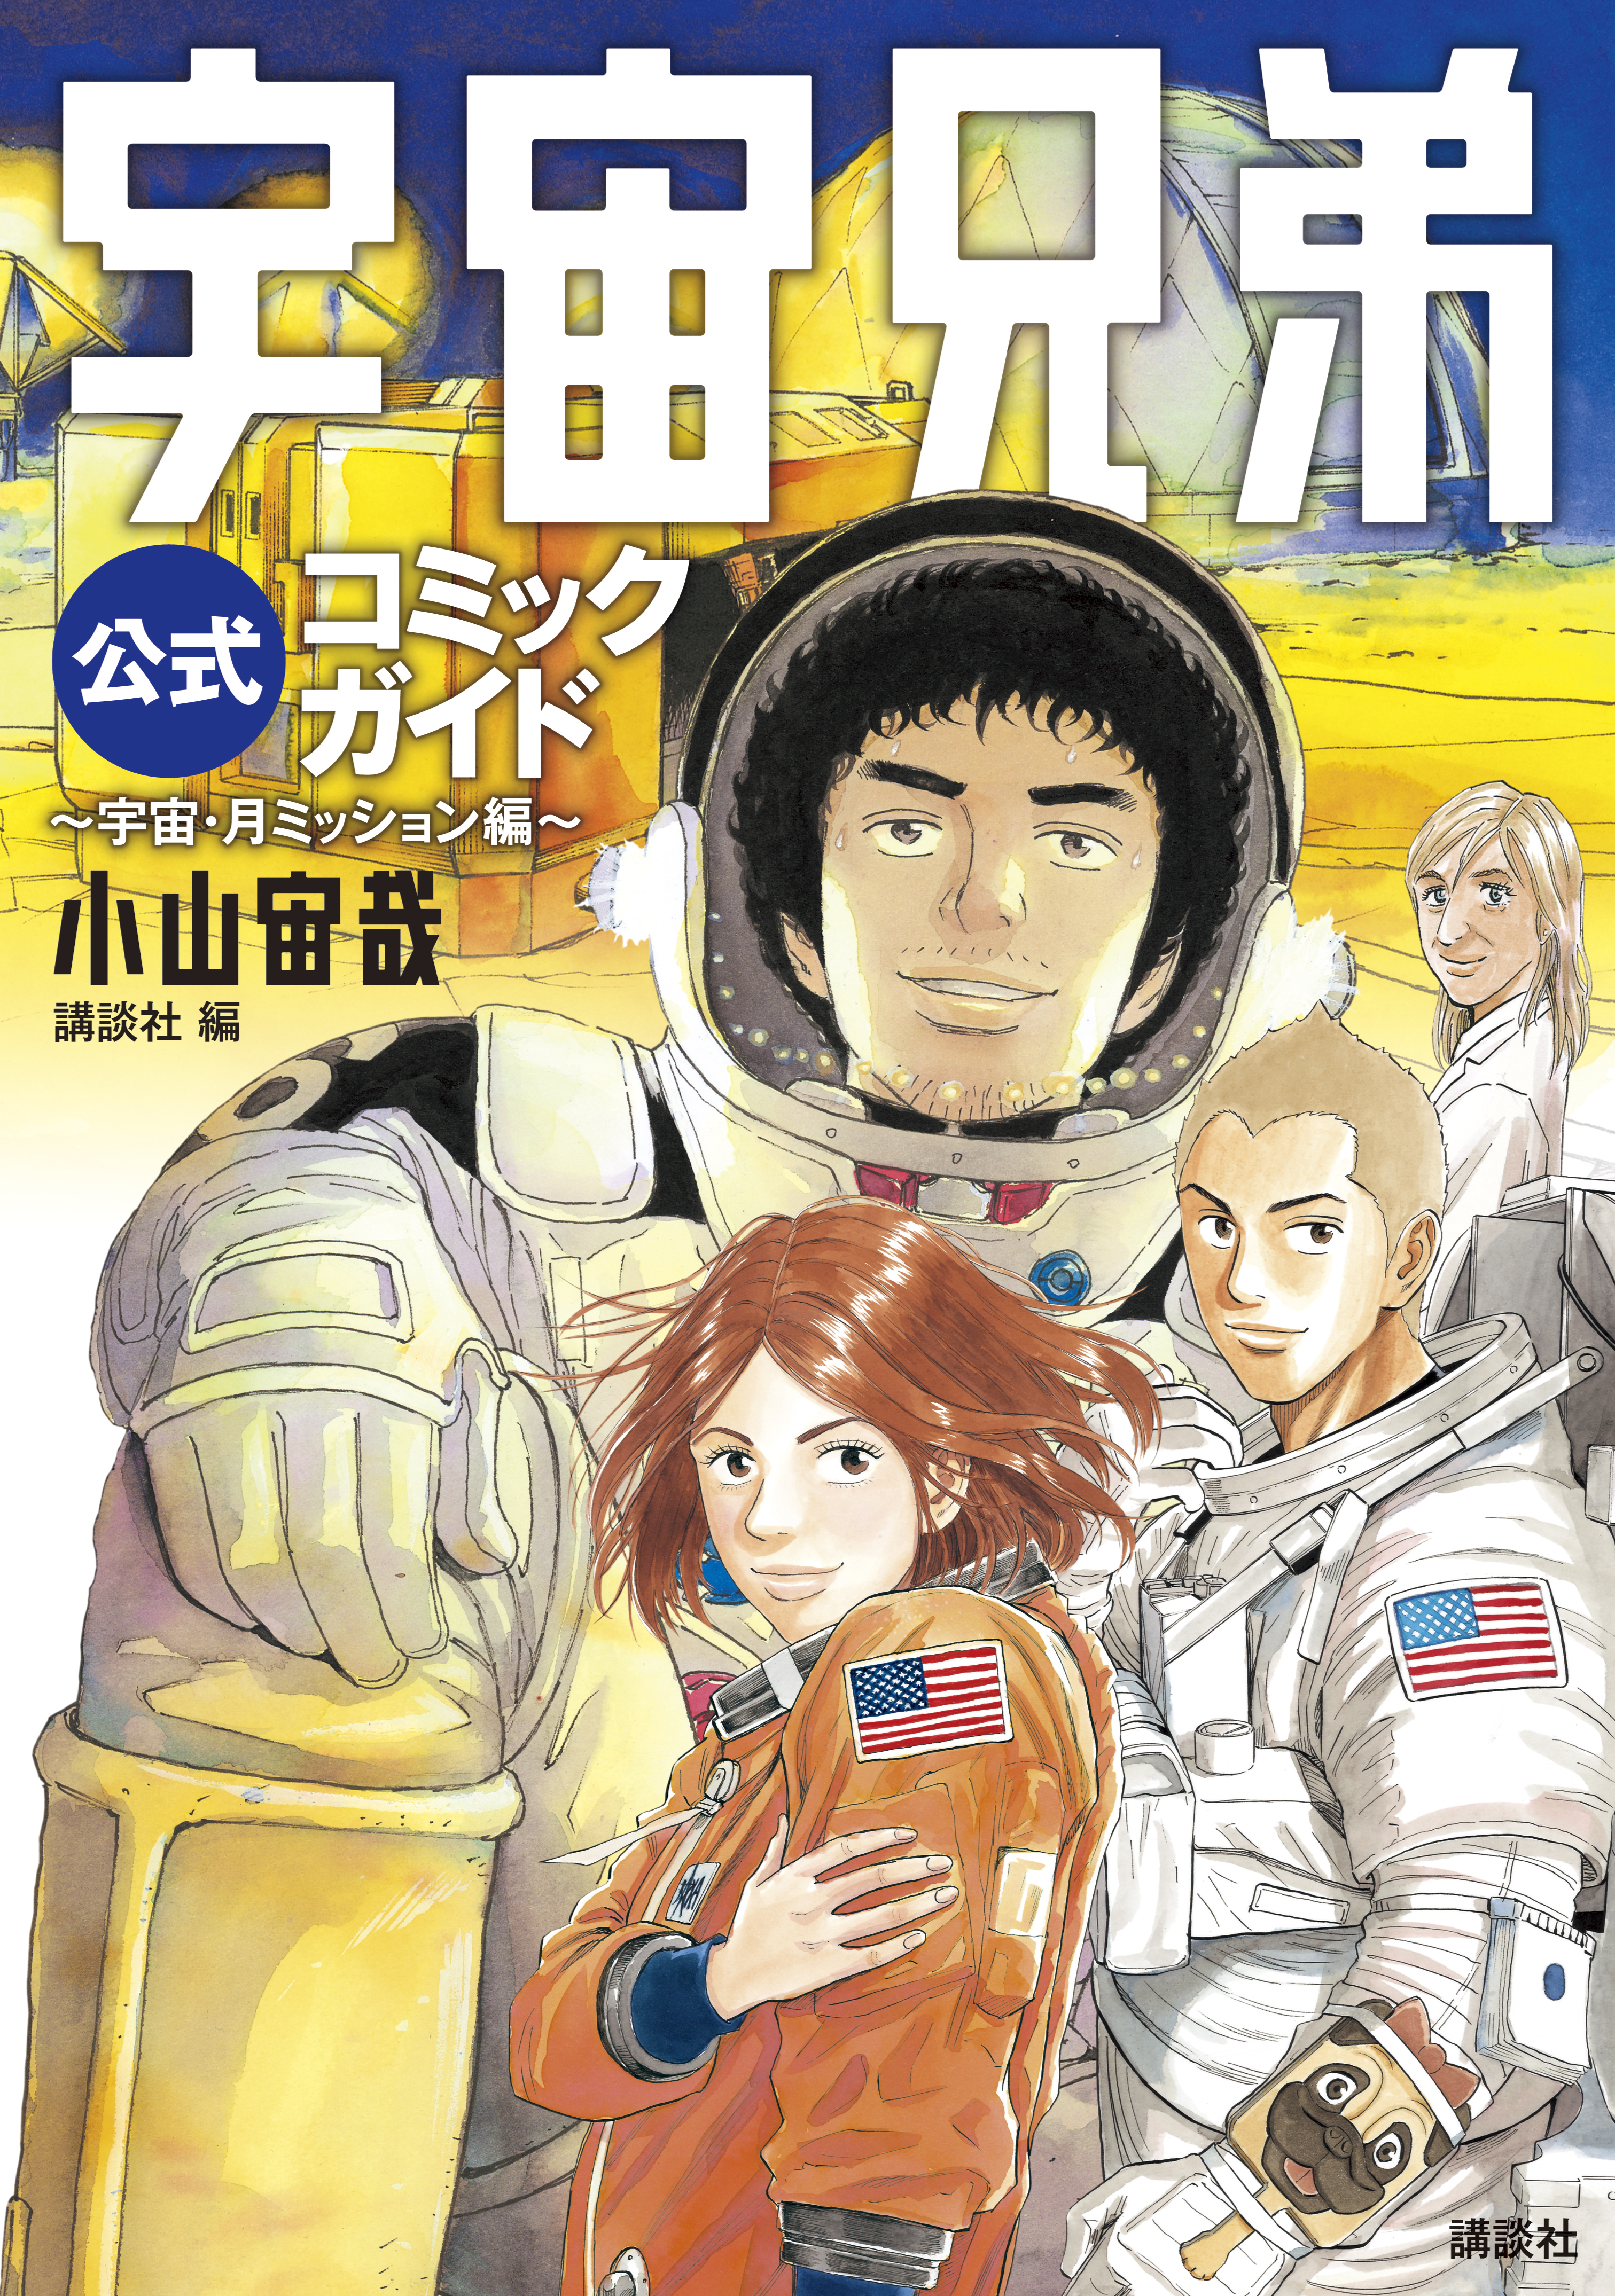 宇宙兄弟公式コミックガイド 宇宙 月ミッション編 無料 試し読みなら Amebaマンガ 旧 読書のお時間です